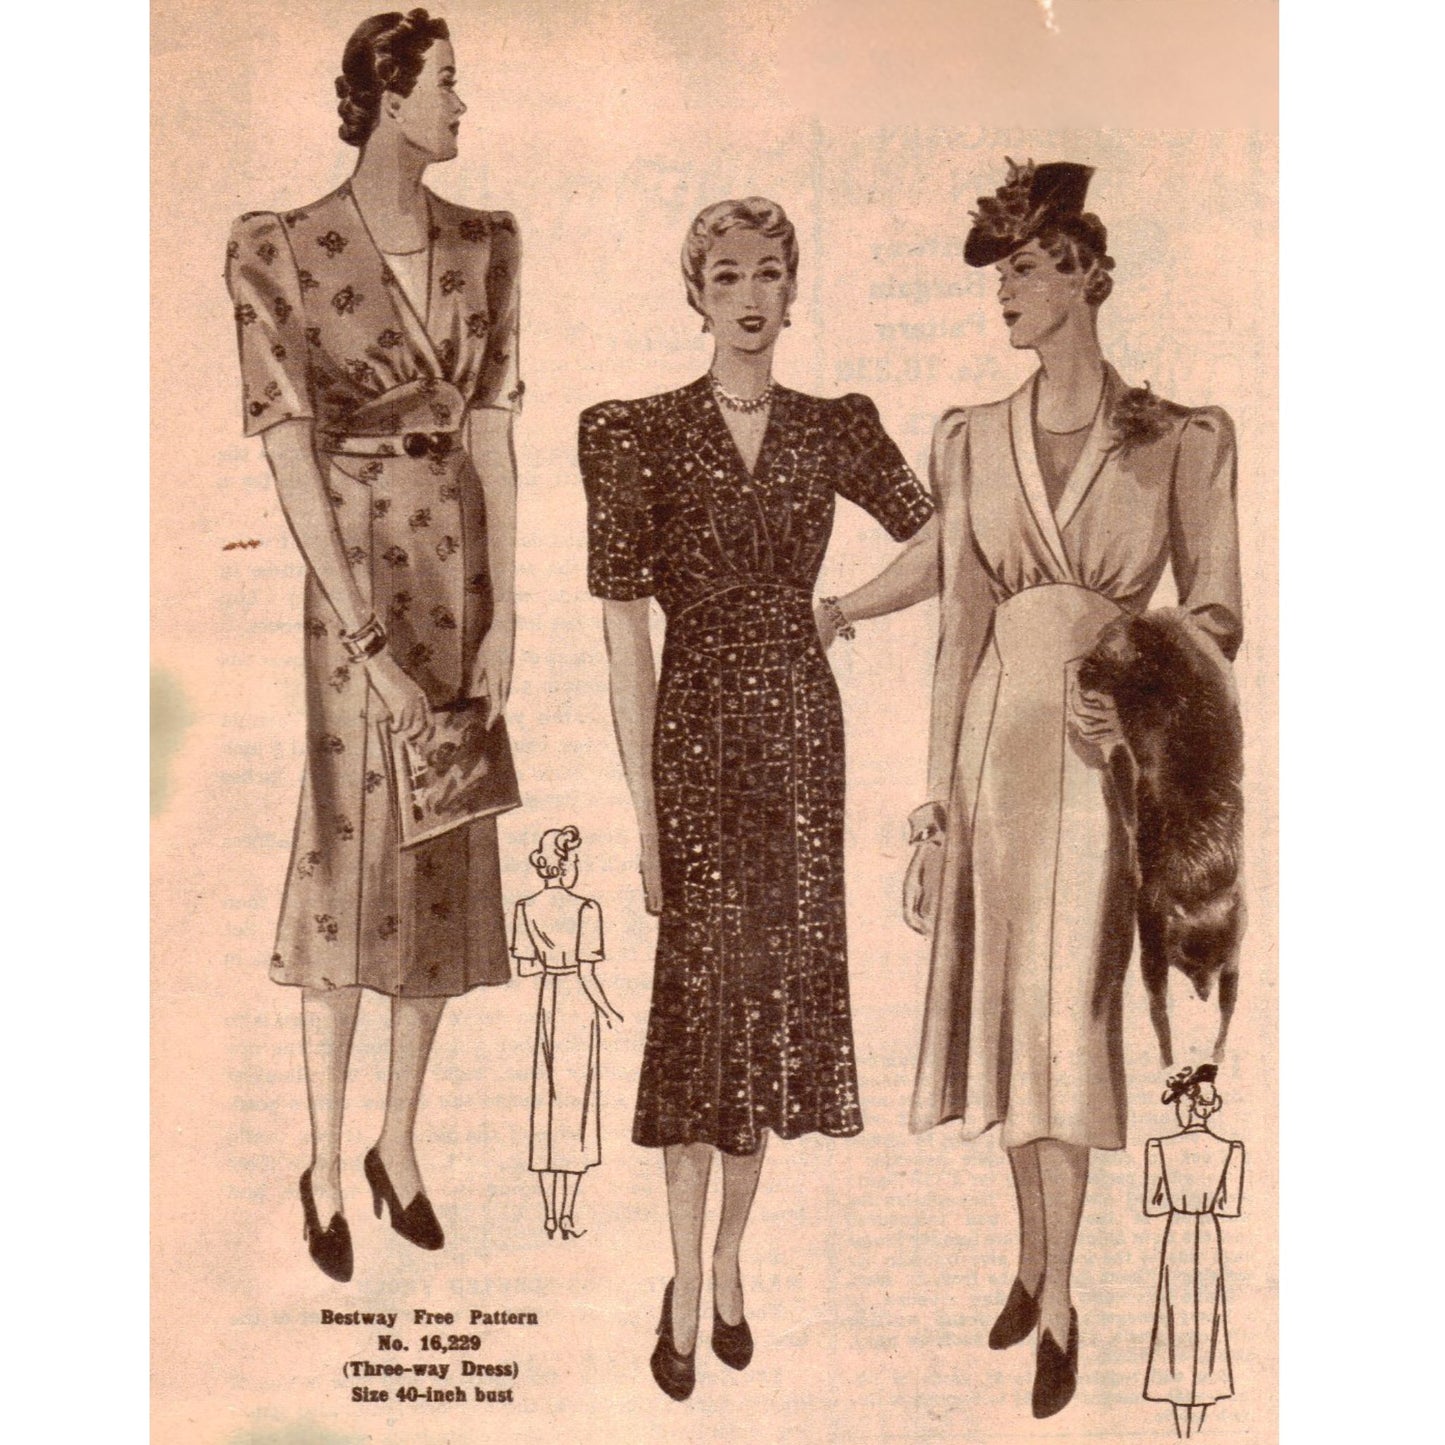 Schnittmuster aus den 1930er Jahren, bezauberndes 3-Wege-Kleid – Brustumfang: 40 Zoll (101 cm)